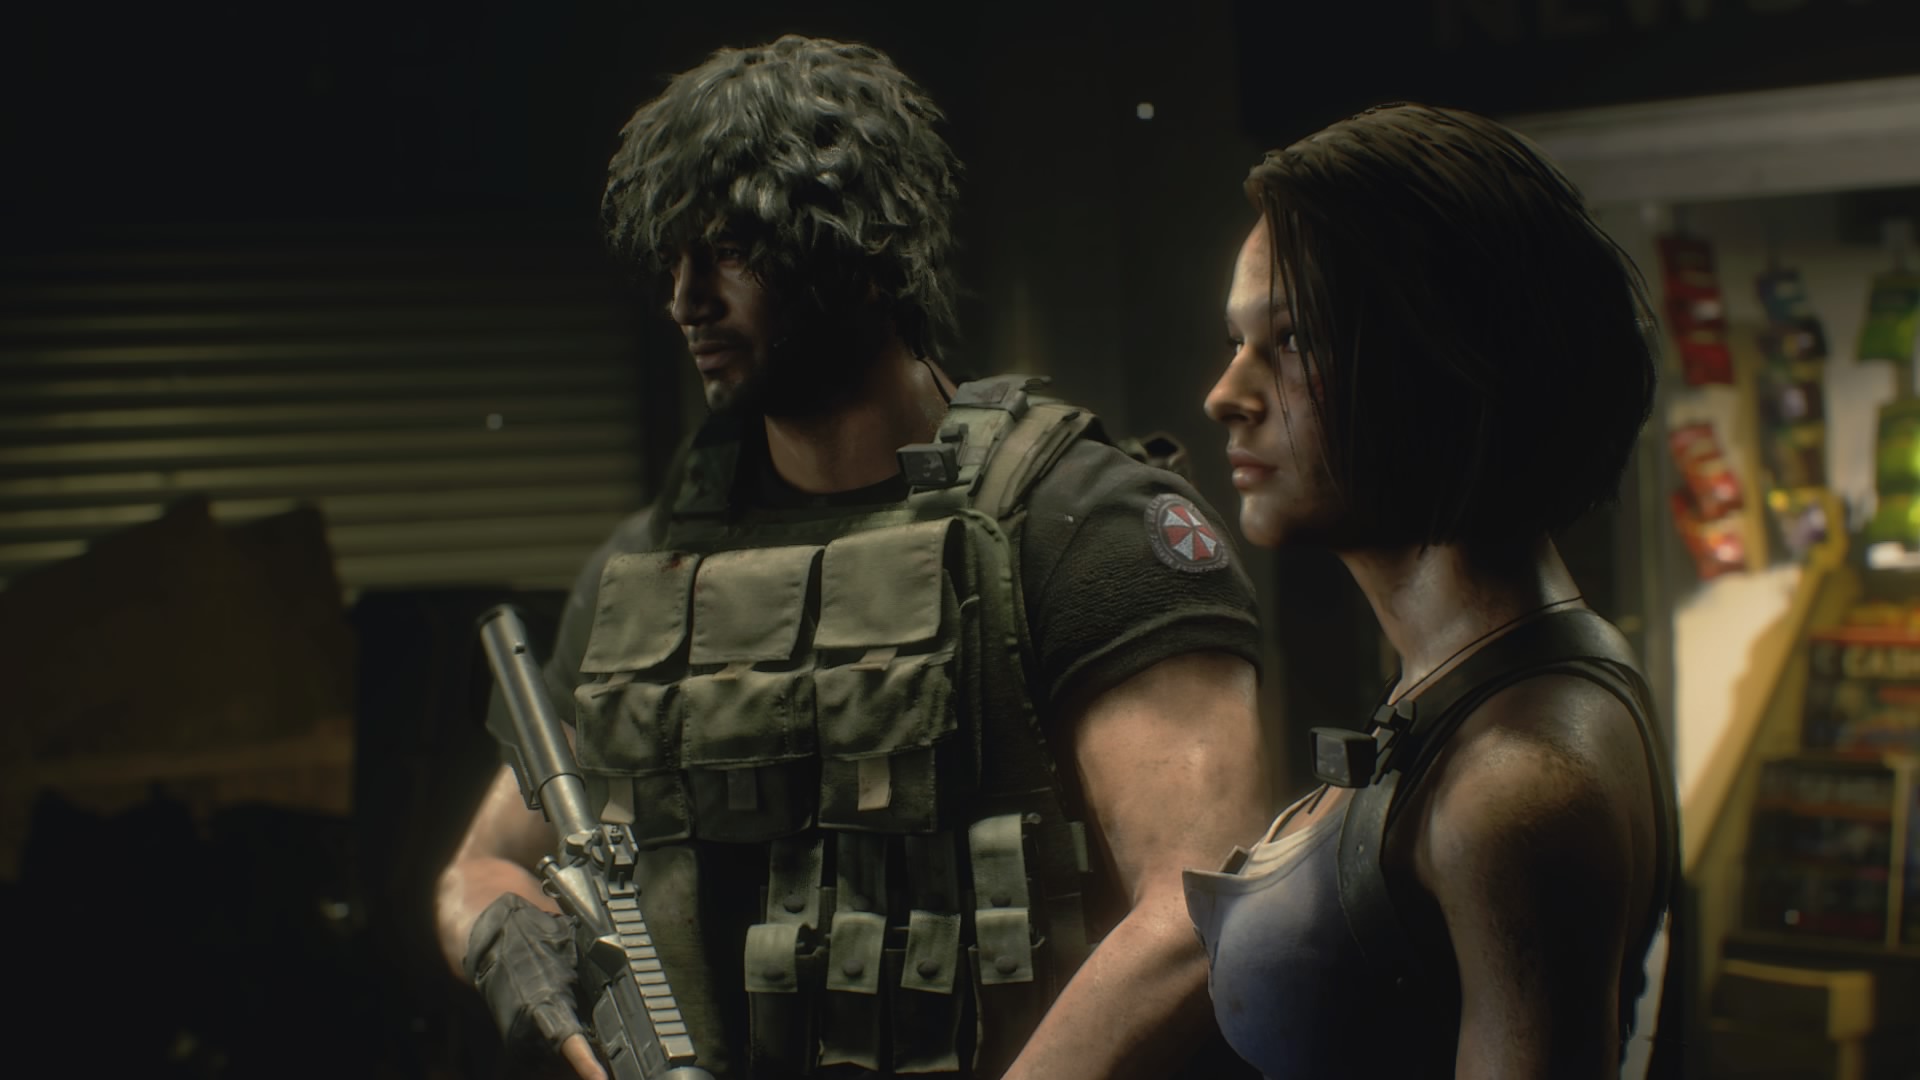 Review Resident Evil 4  Elevando novamente a barra do que é um remake -  Canaltech